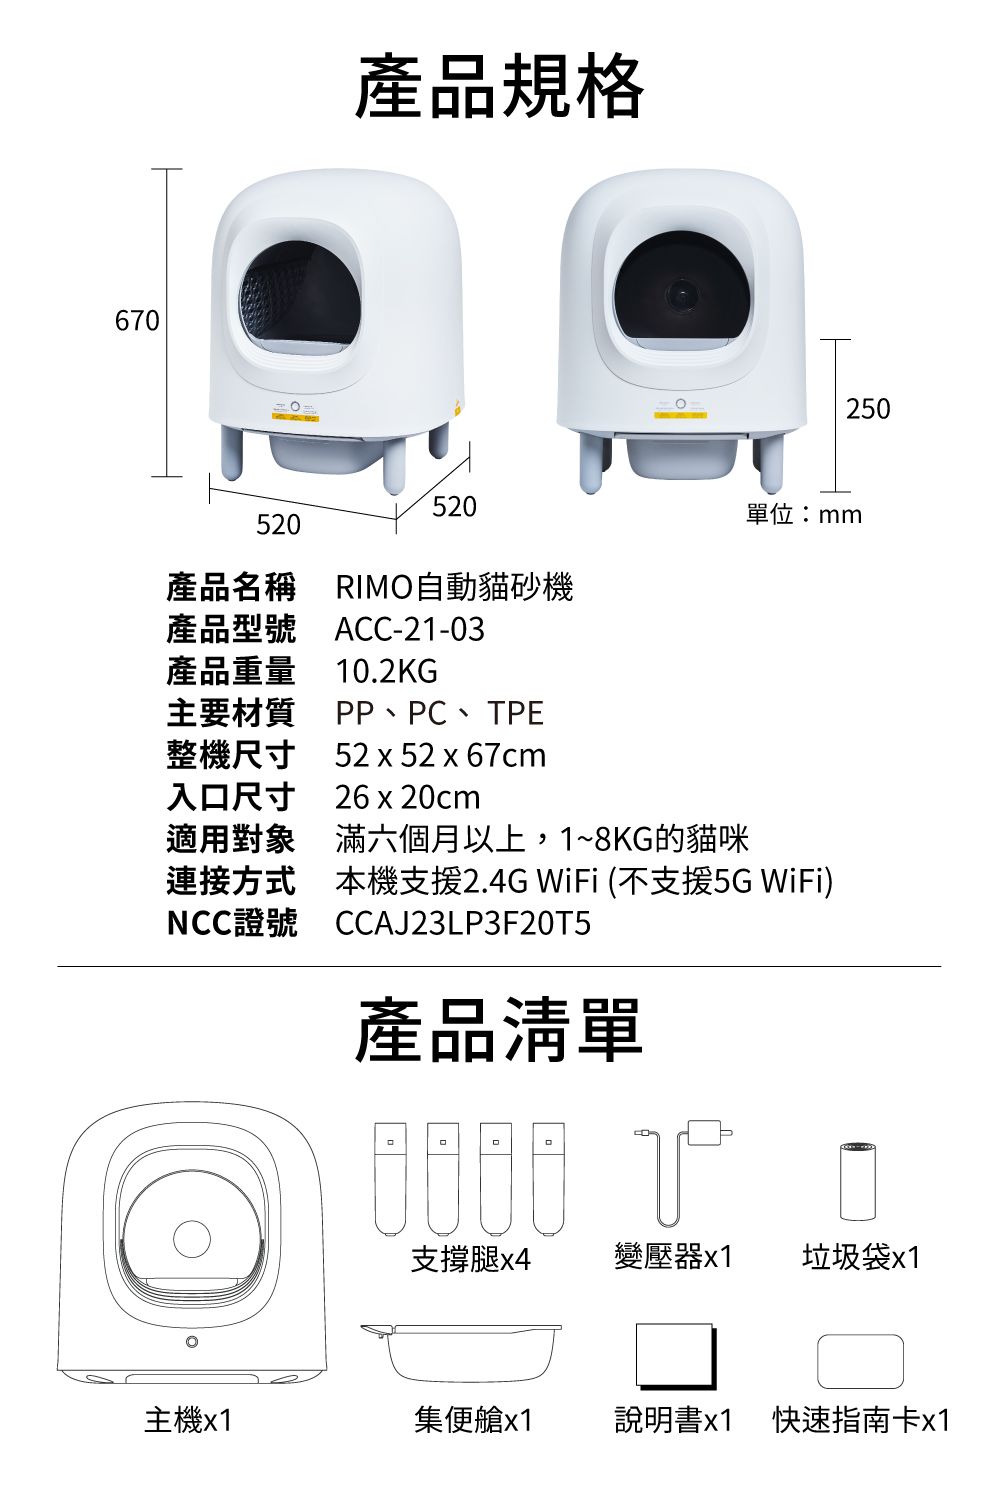 670產品規格520520產品名稱 RIMO自動貓砂機ACC-21-03產品型號產品重量 10.2KG主要材質PP、PC、TPE整機尺寸 52x52x67cm250單位:mm入口尺寸26x20cm適用對象滿六個月以上,1~8KG的貓咪連接方式本機支援2.4G WiFi (不支援5G WiFi)NCC證號CCAJ23LP3F20T5產品清單支撐腿x4變壓器x1垃圾袋x1主機x1集便艙x1說明書x1 快速指南卡x1